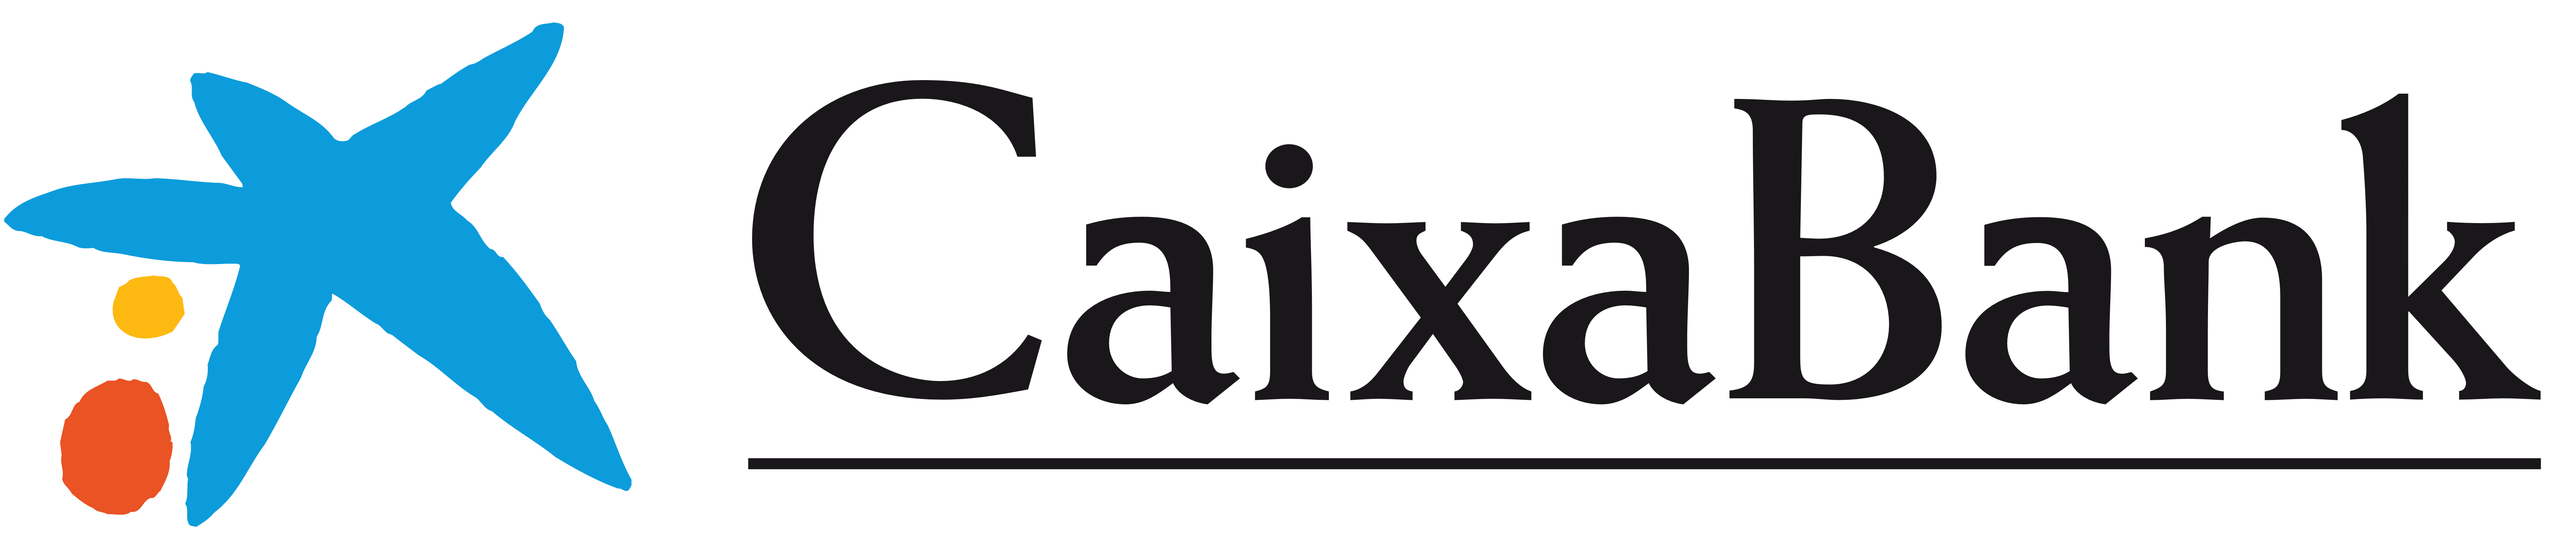 CaixaBank Brand Logo